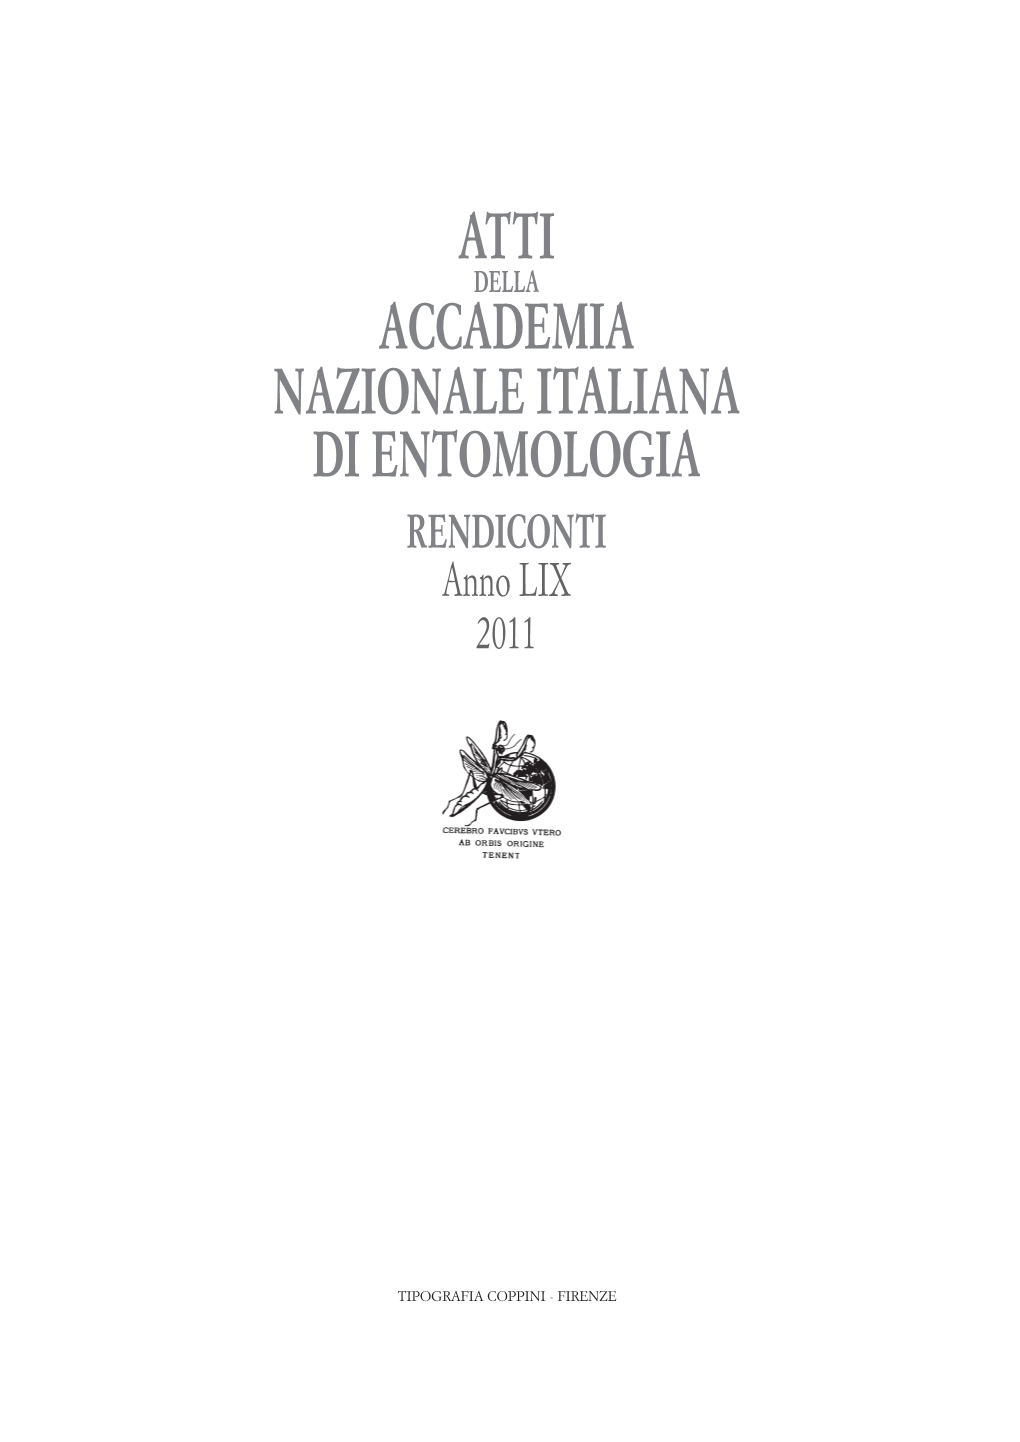 Atti Accademia Nazionale Italiana Di Entomologia Anno LIX, 2011: 9-27